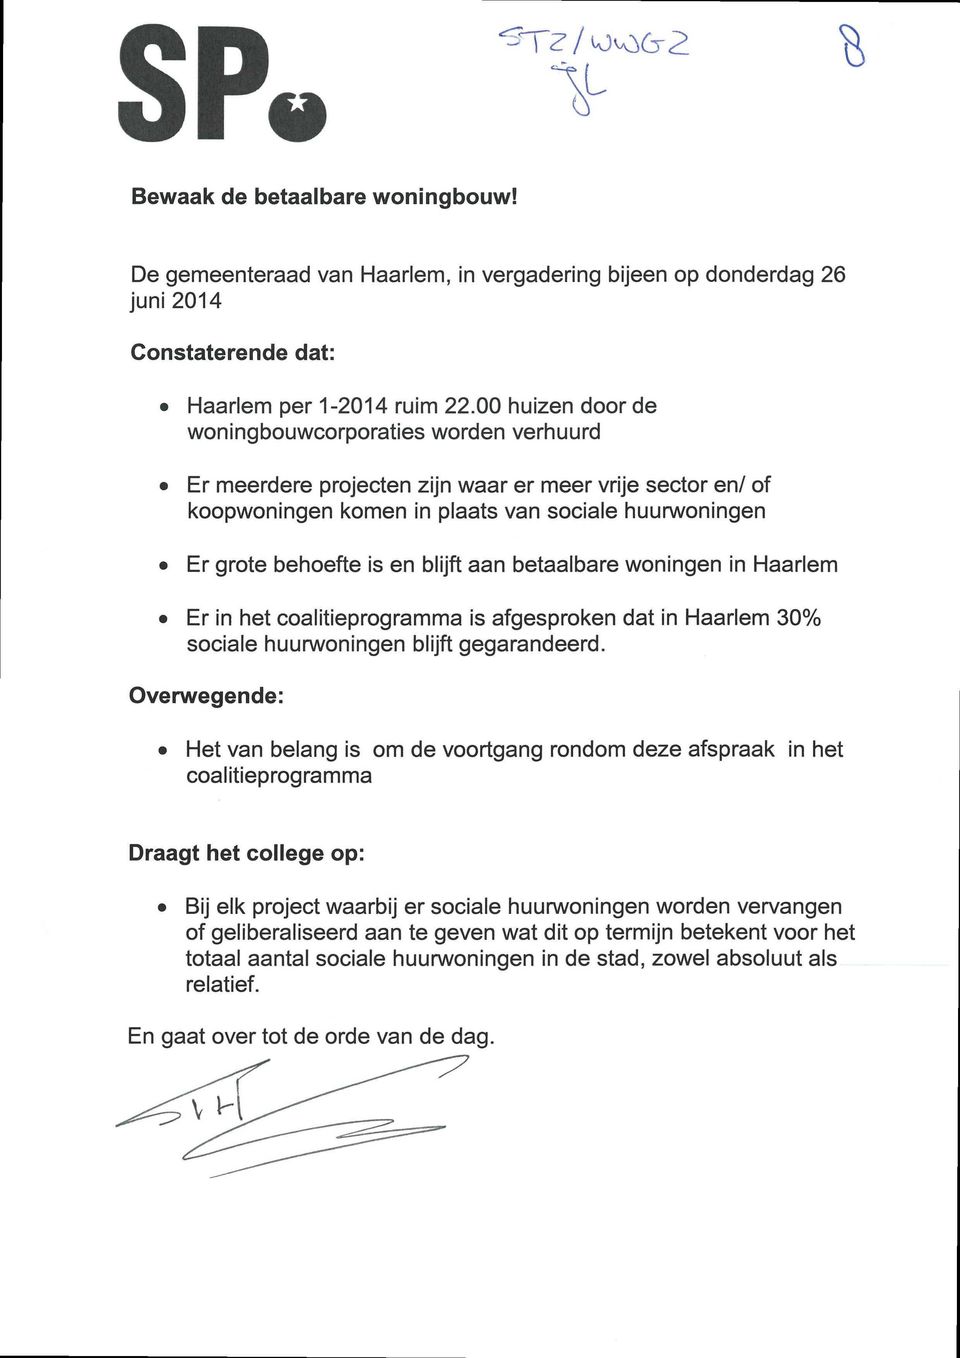 blijft aan betaalbare woningen in Haarlem Er in het coalitieprogramma is afgesproken dat in Haarlem 30% sociale huurwoningen blijft gegarandeerd.